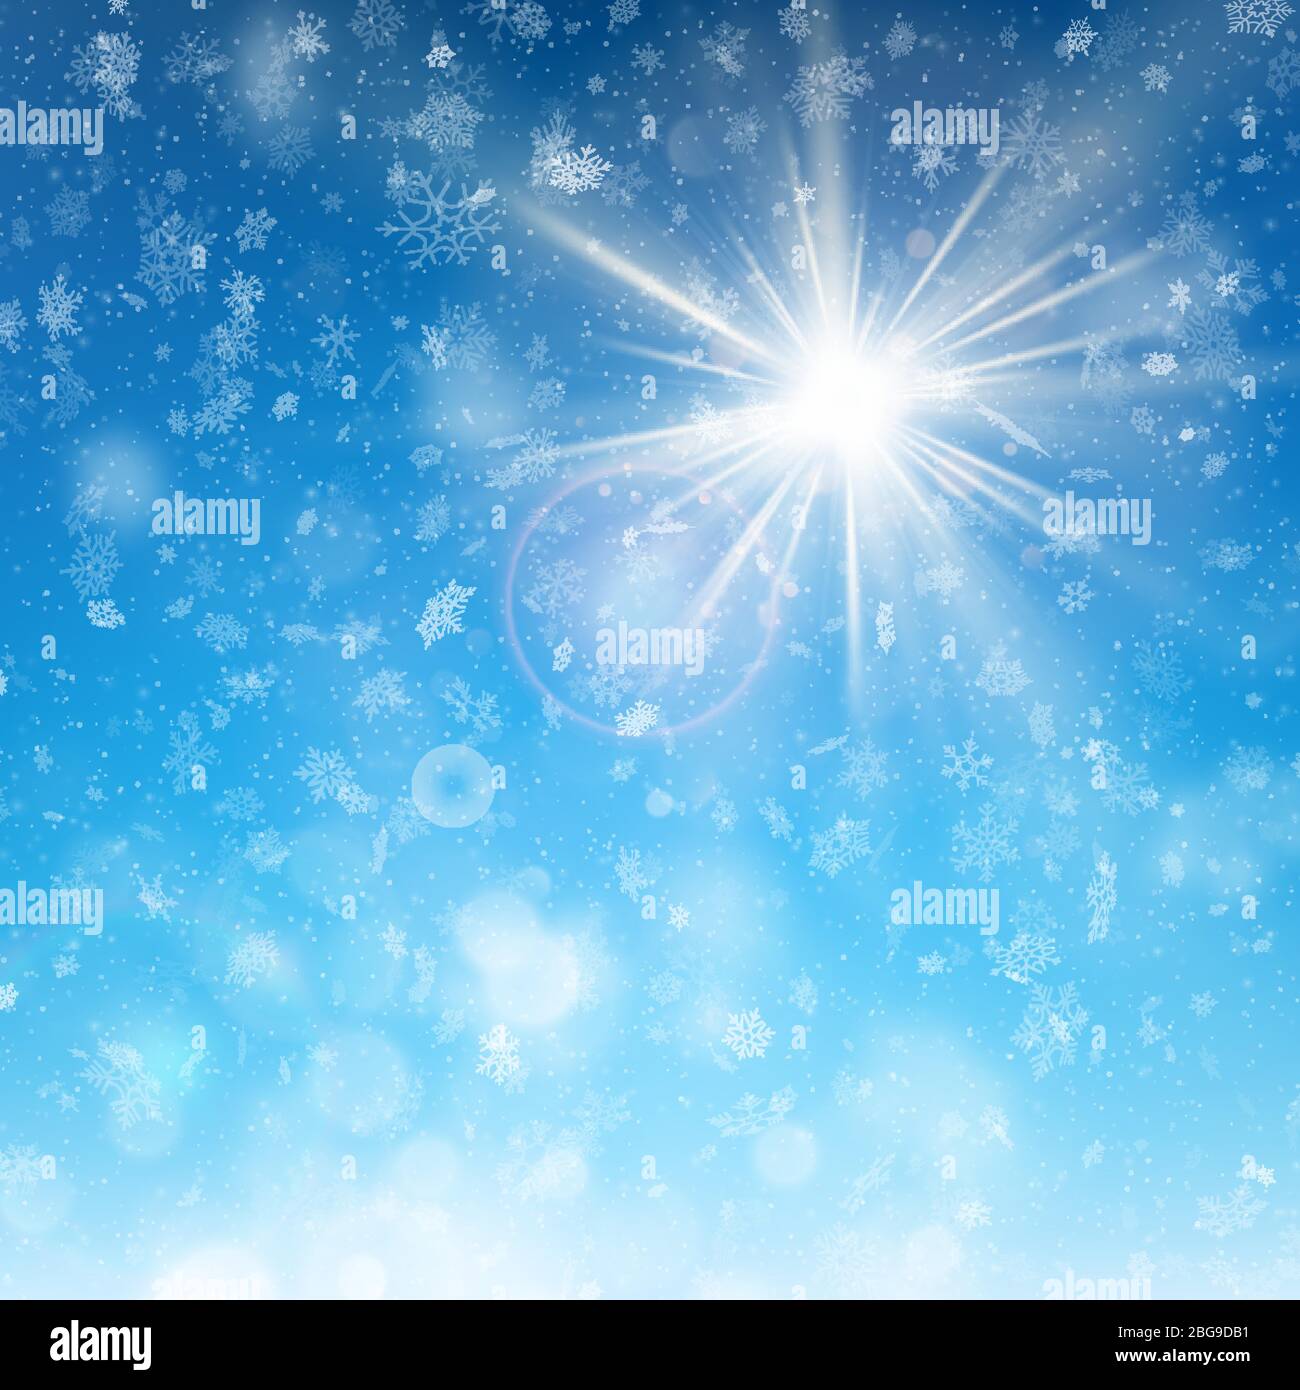 Delicato giorno di sole invernale con cielo blu e fondo nevoso. EPS 10 Illustrazione Vettoriale